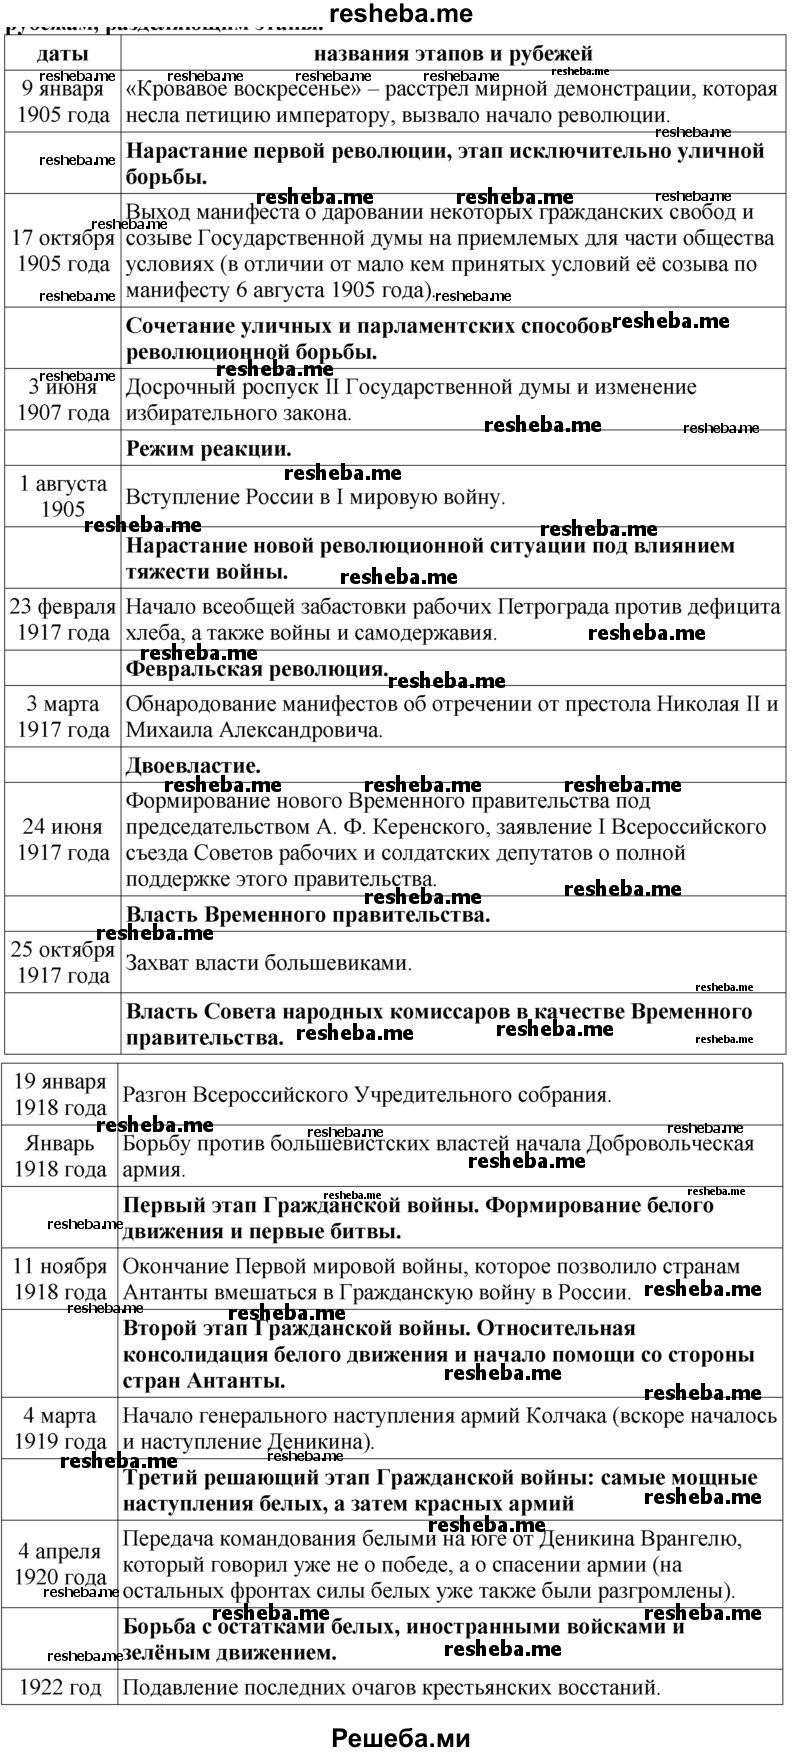 С помощью хронологической таблицы на с. 374-375 выдели этапы в ходе российского революционного кризиса, дай название каждому из них и рубежам, разделяющим этапы